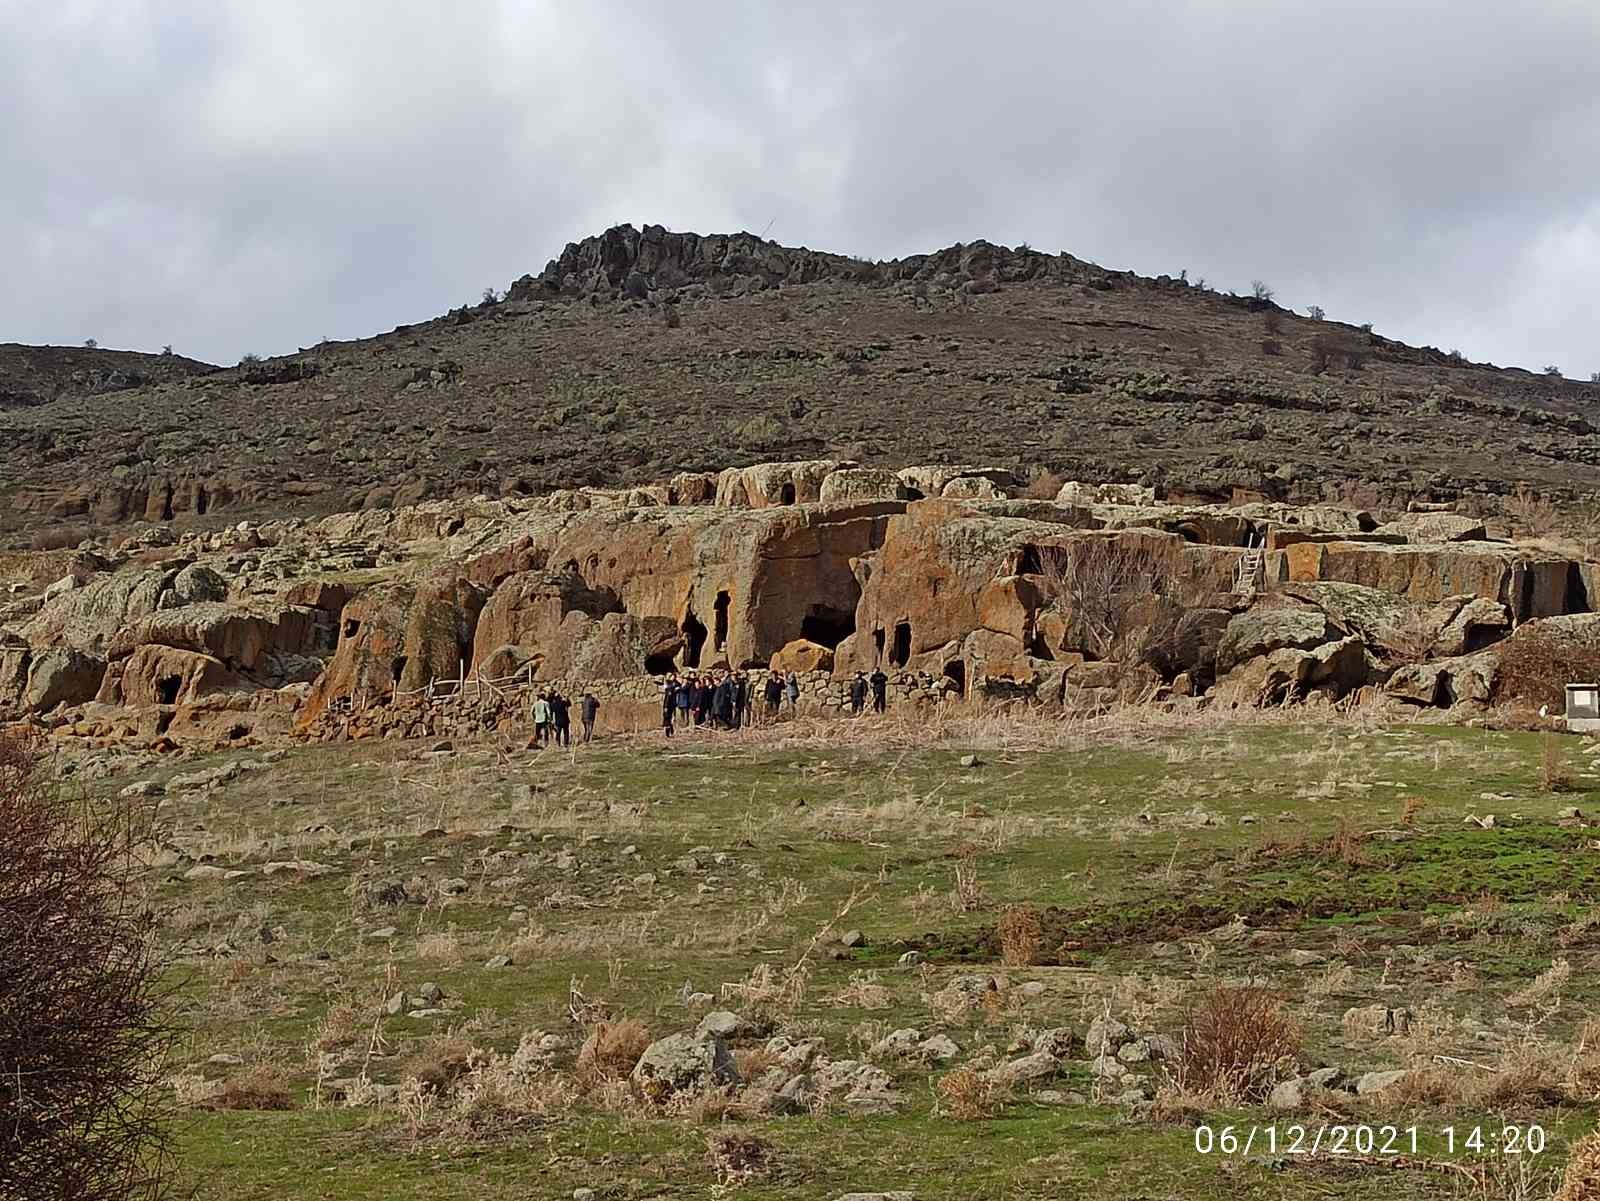 (ÖZEL) Gizemli Bininler Tarihi Kaya Evleri turizme kazandırılıyor #afyonkarahisar